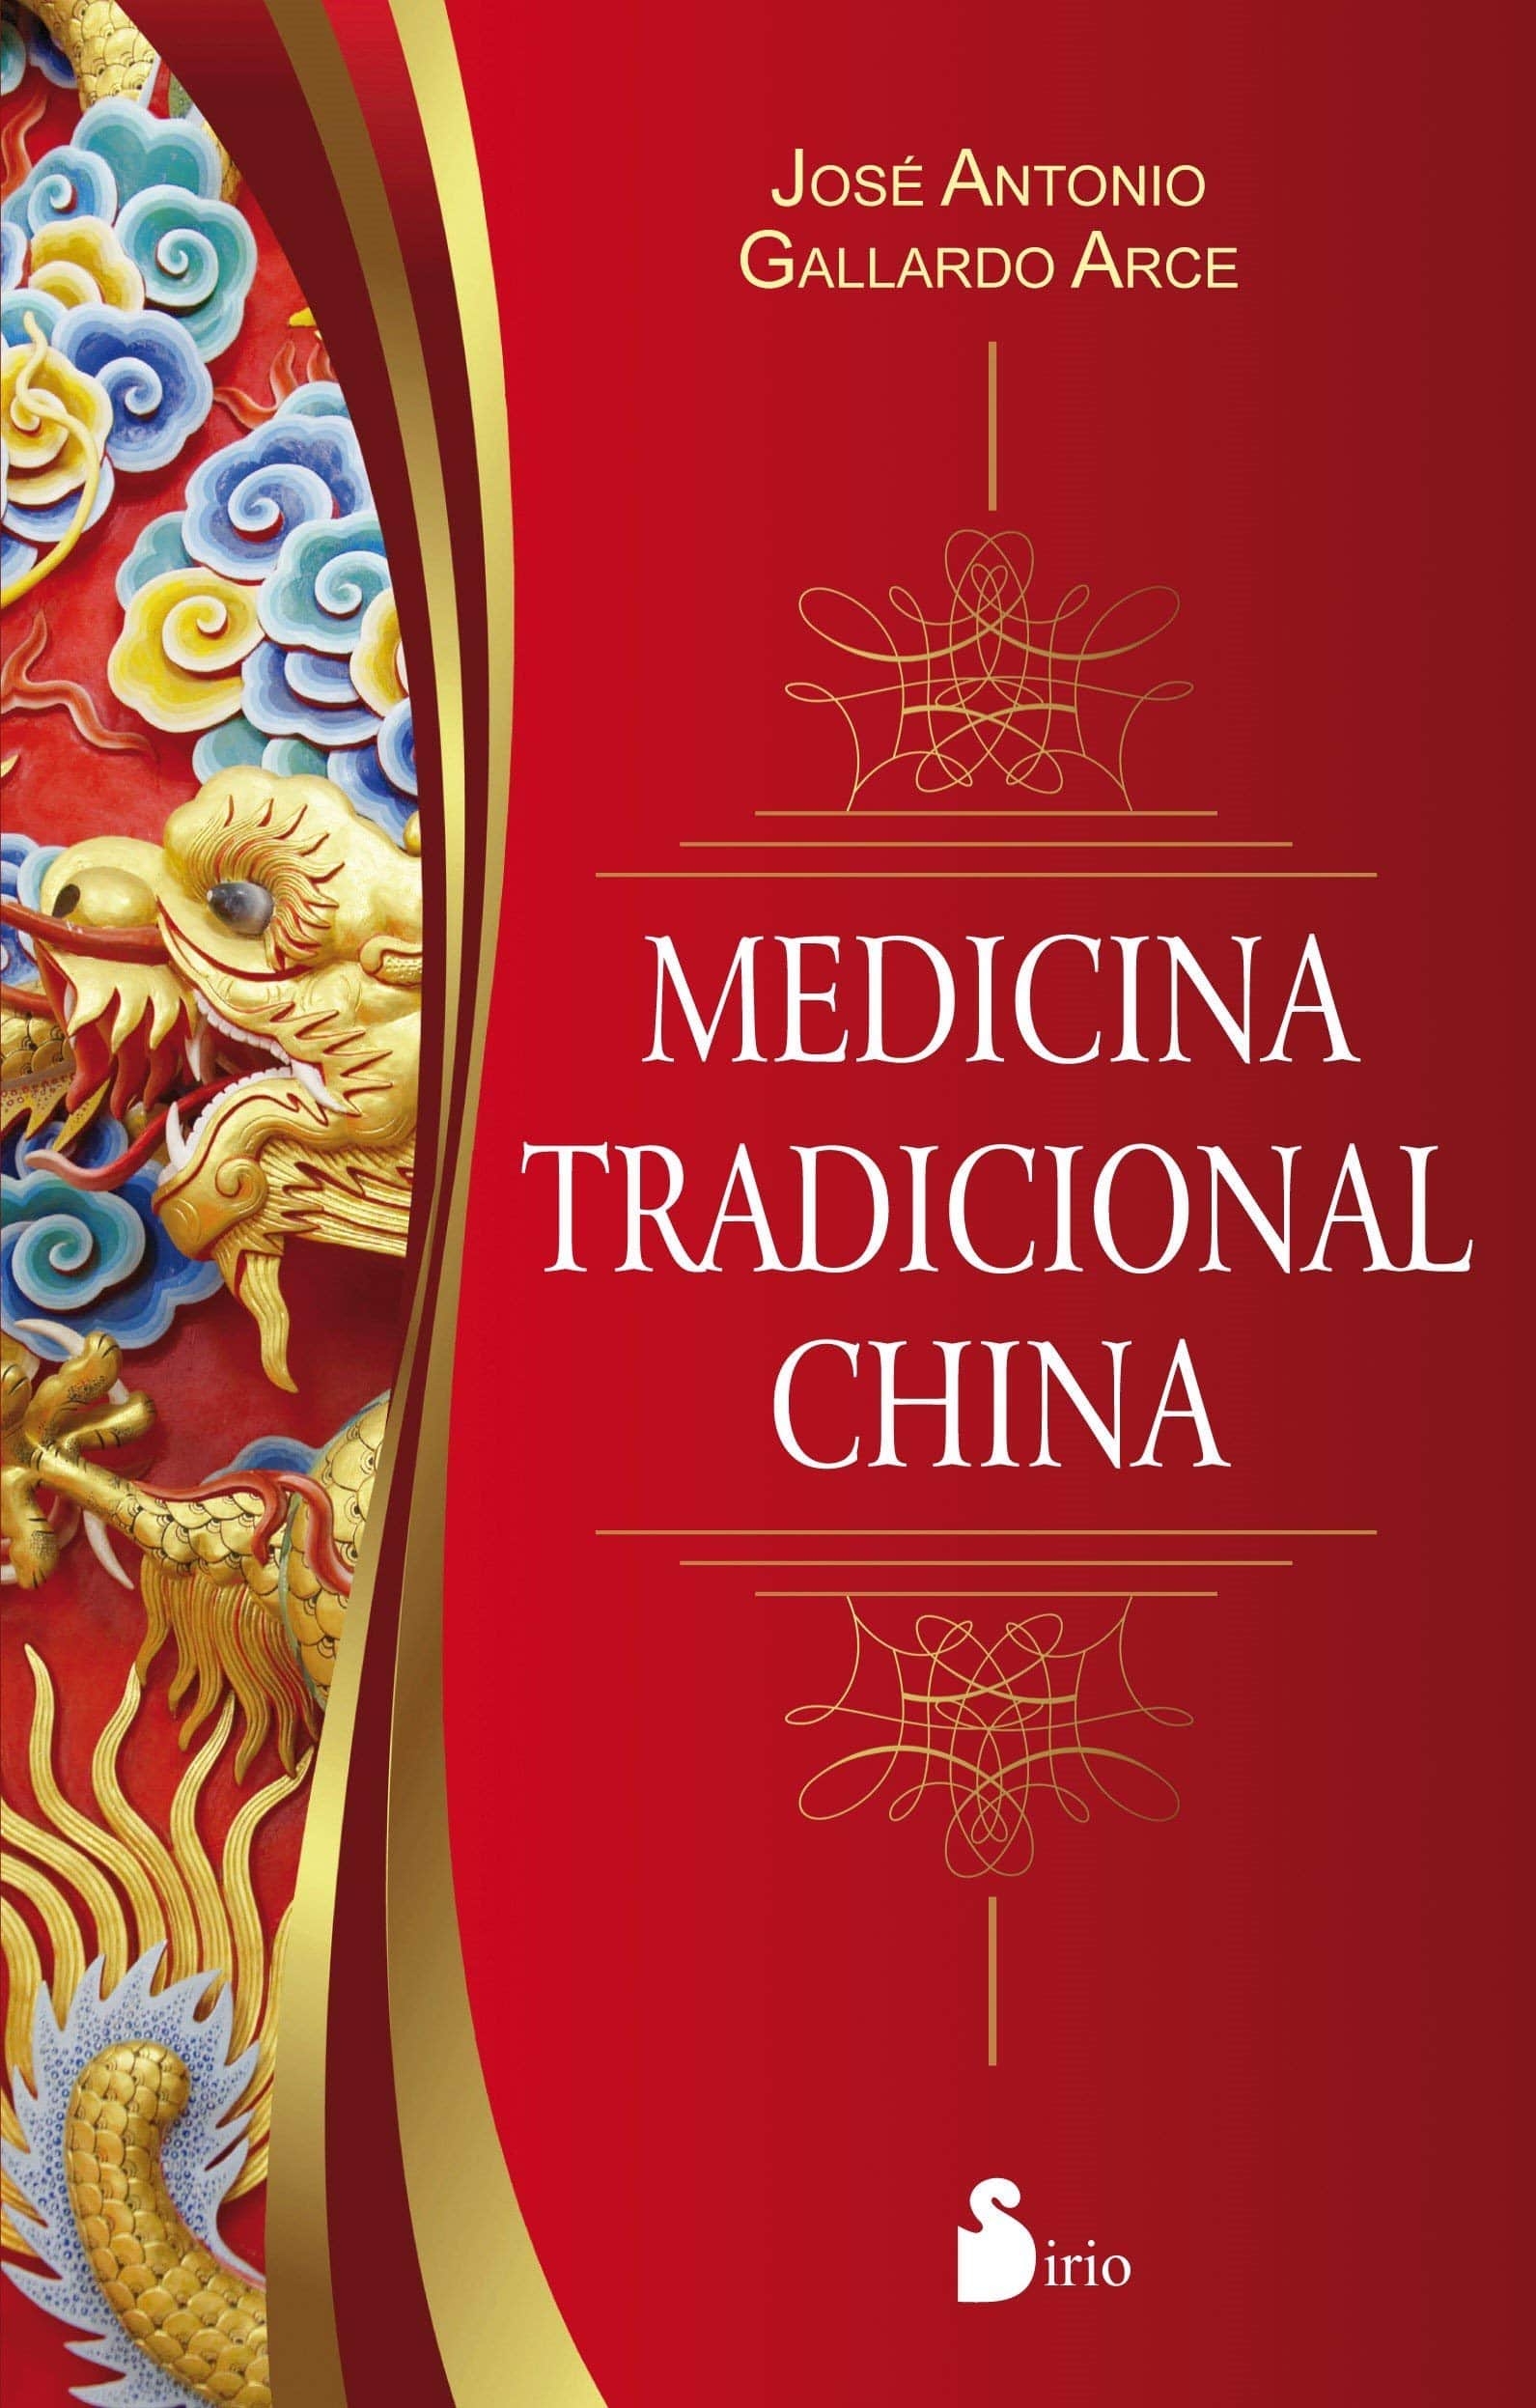  Libro - Medicina tradicional china - edición especial - libro curioso